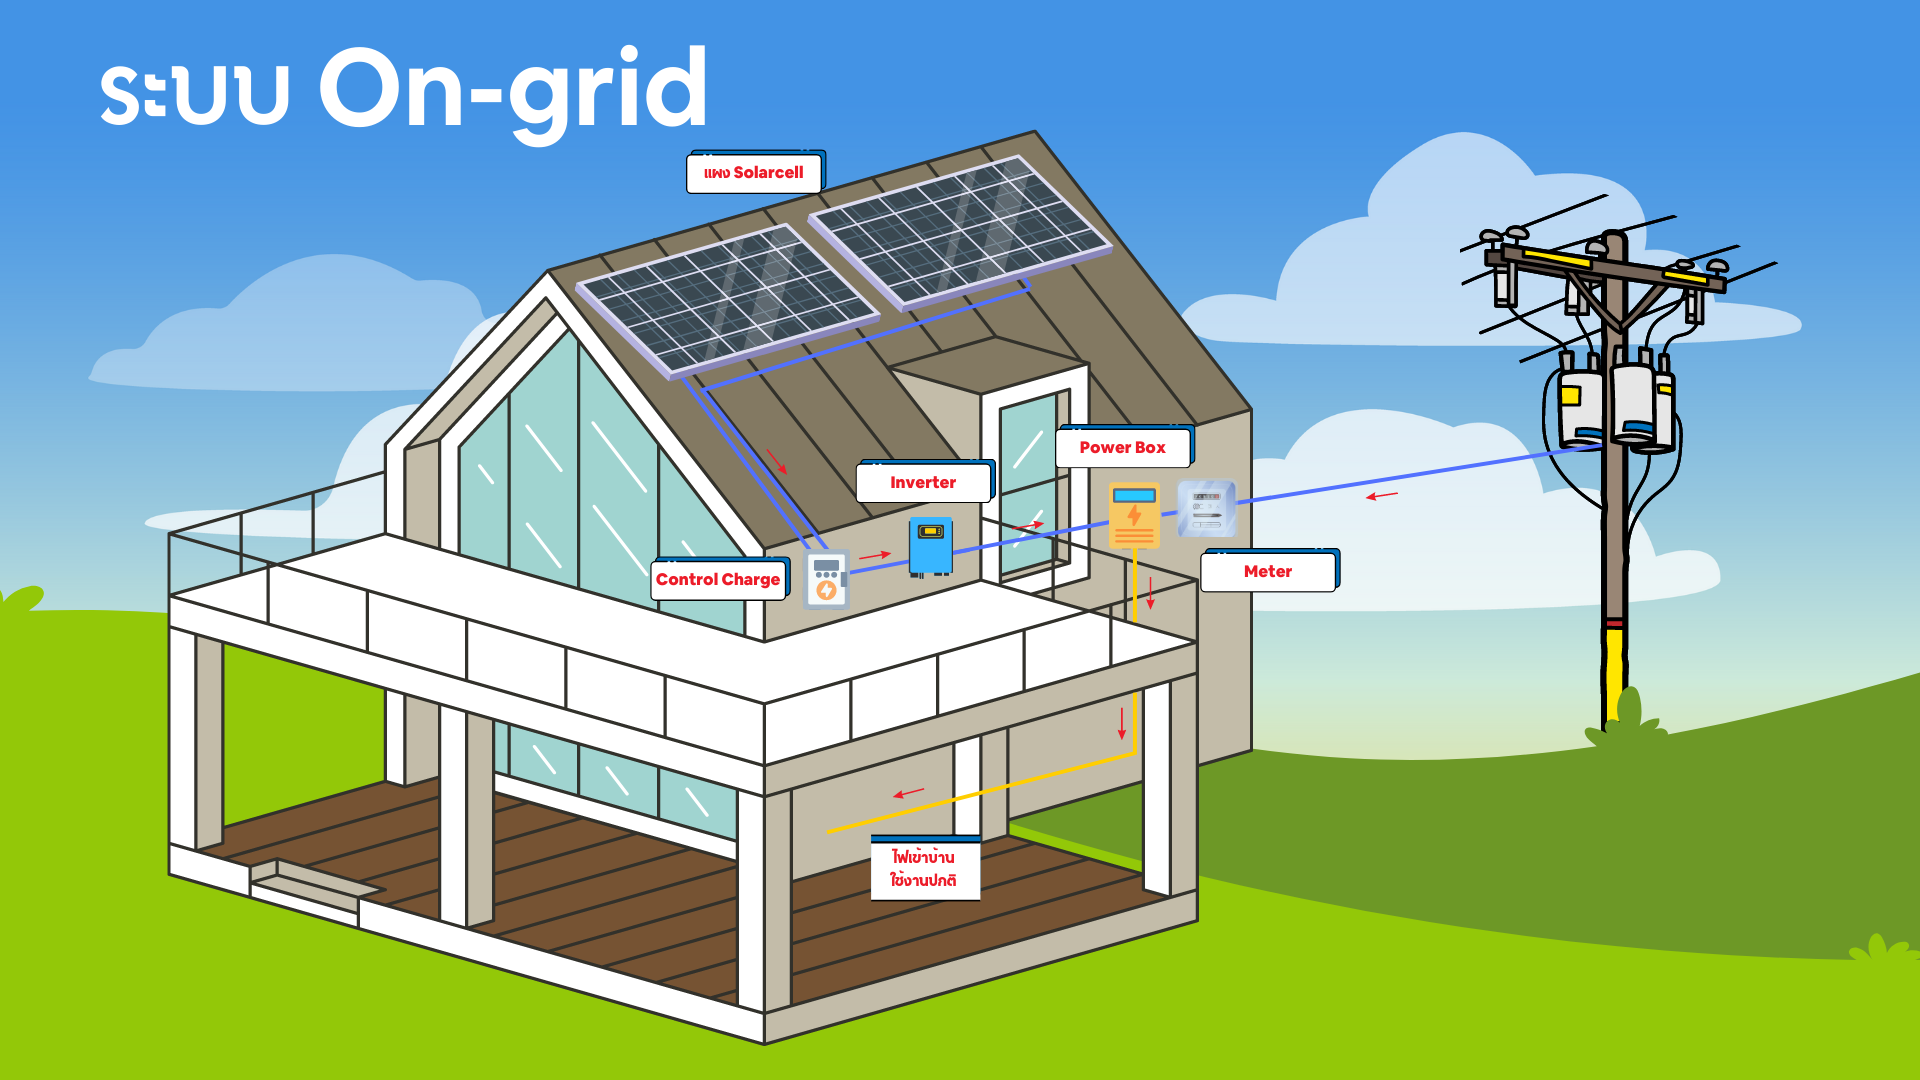 แบตเตอรี่โซลาร์เซลล์ ระบบโซลาร์เซลล์ แผนผัง ออนกริด Solar Cell On-grid infographic